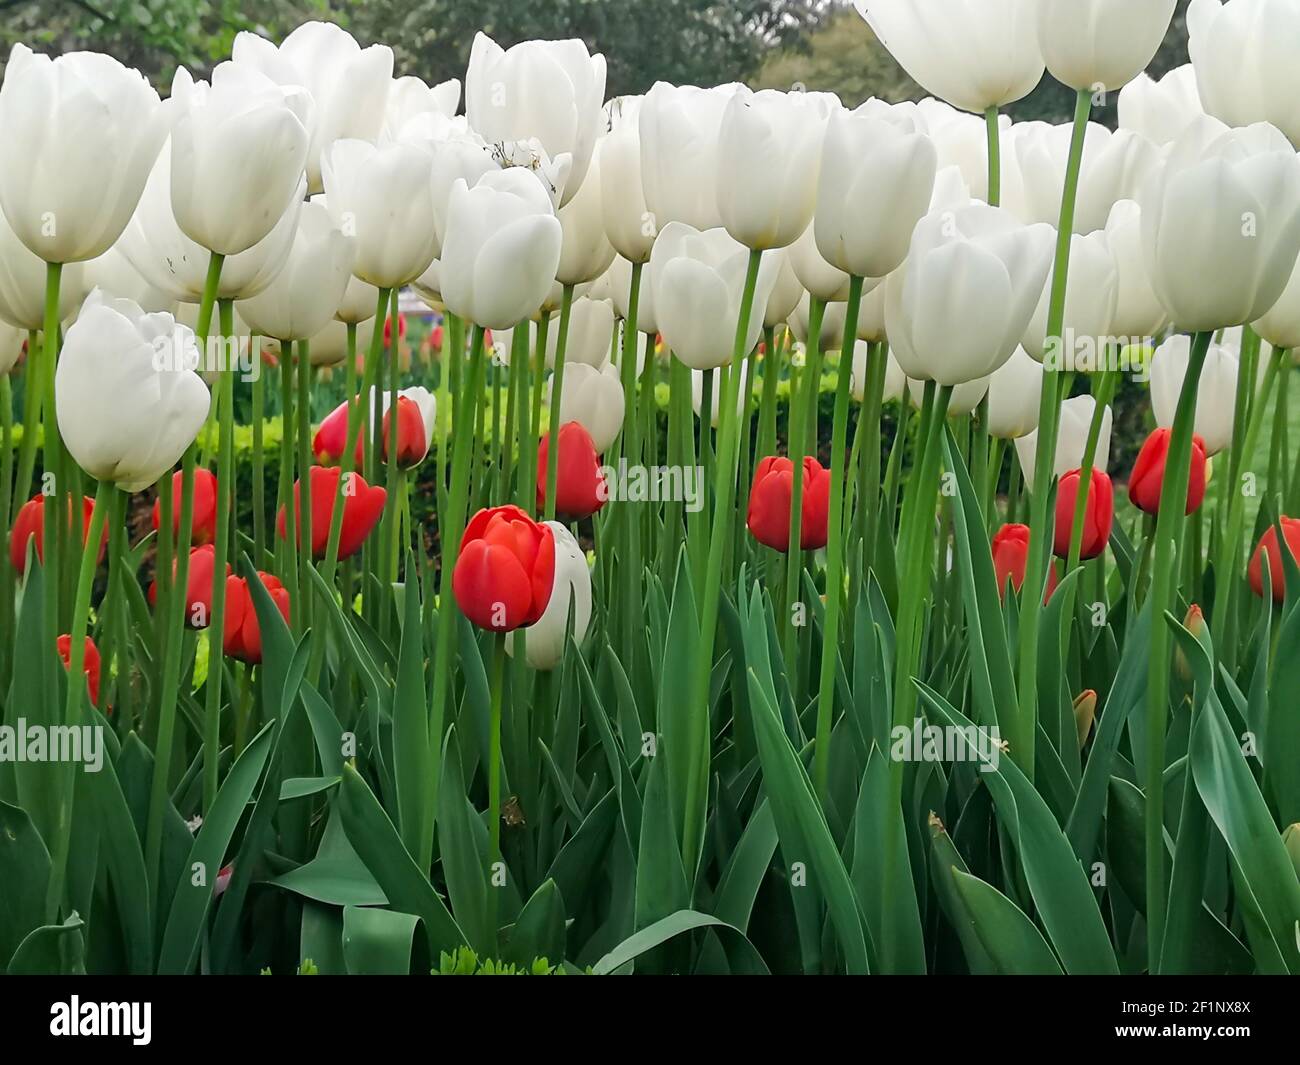 Nombreux tulipes romantiques et de saison. Un champ de fleurs blanches et rouges. Bouquet cadeau de printemps. Magnifique fond naturel à la lumière du jour Banque D'Images